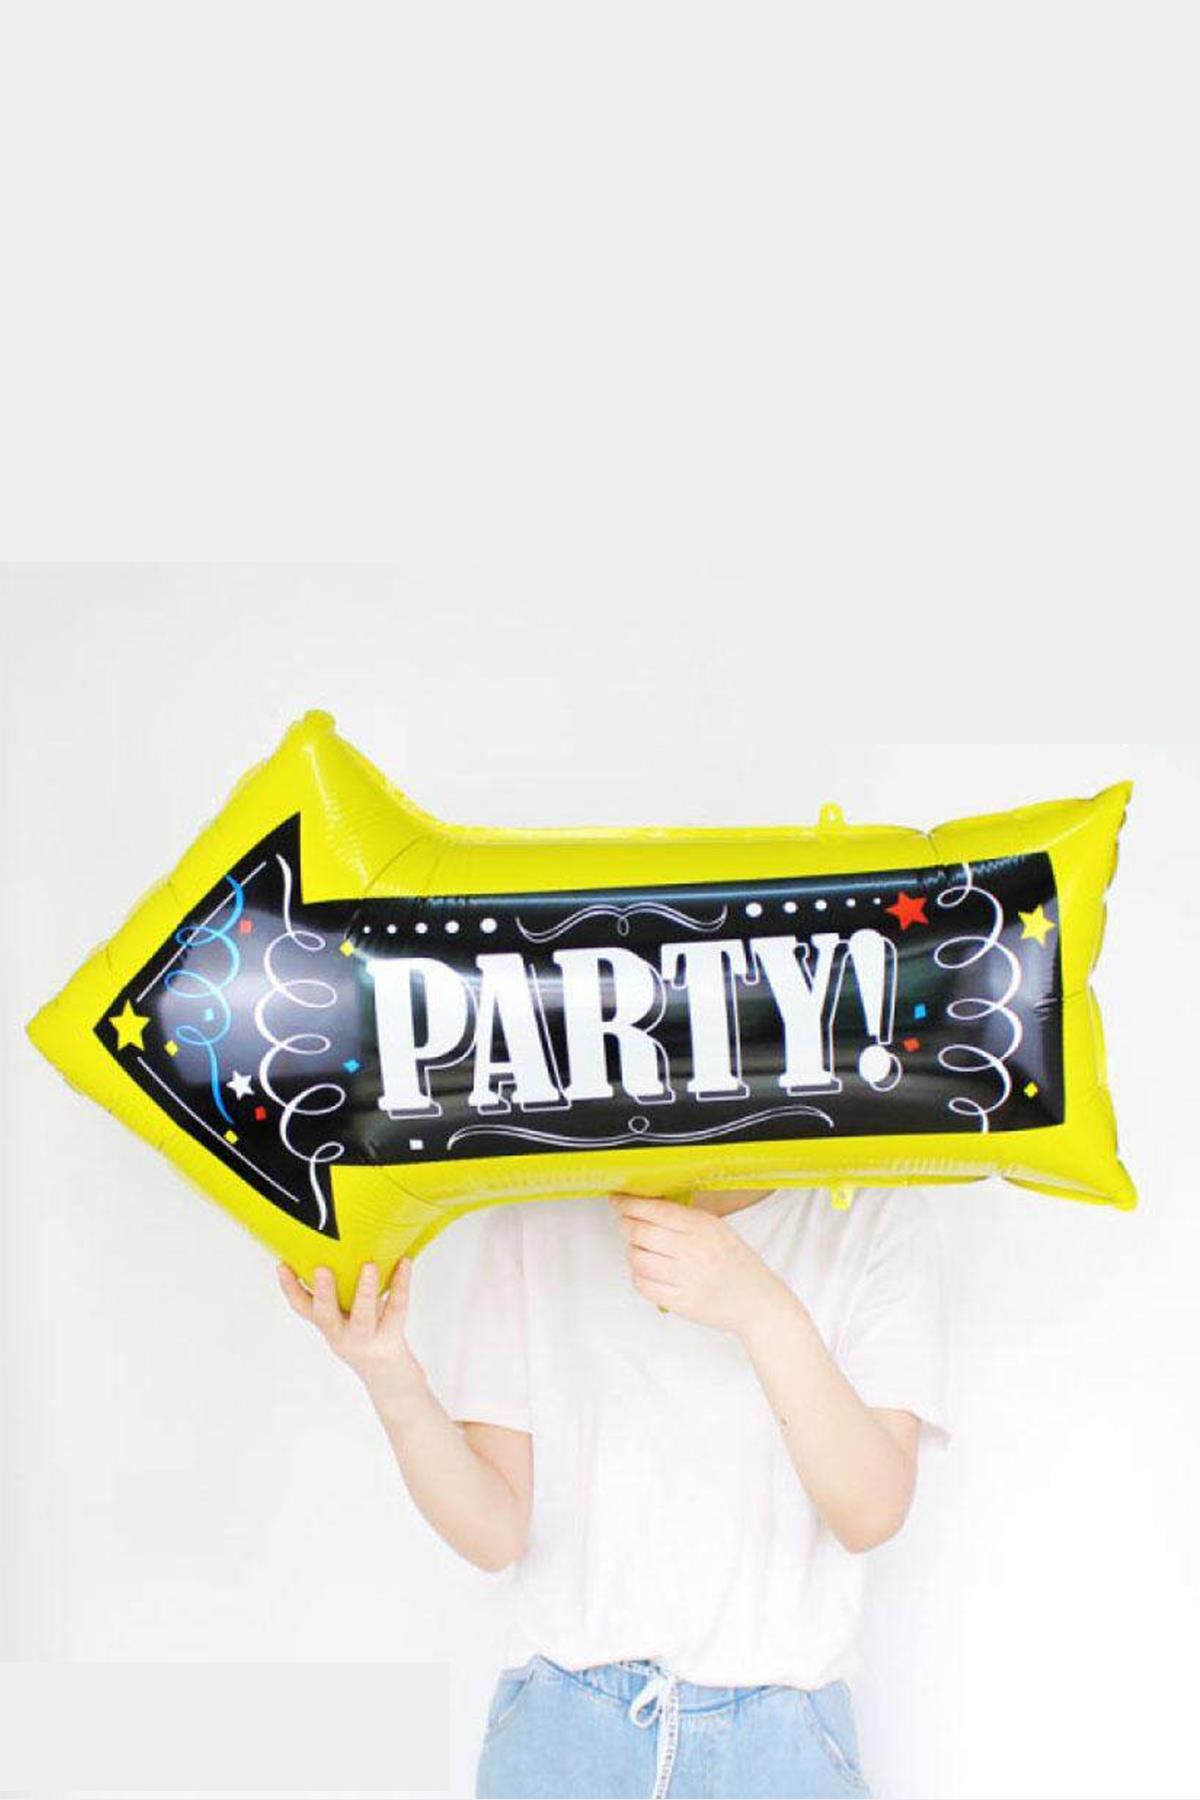 Party Yazılı Ok Şeklinde Parti Balonu Doğum Günü Parti Balonu